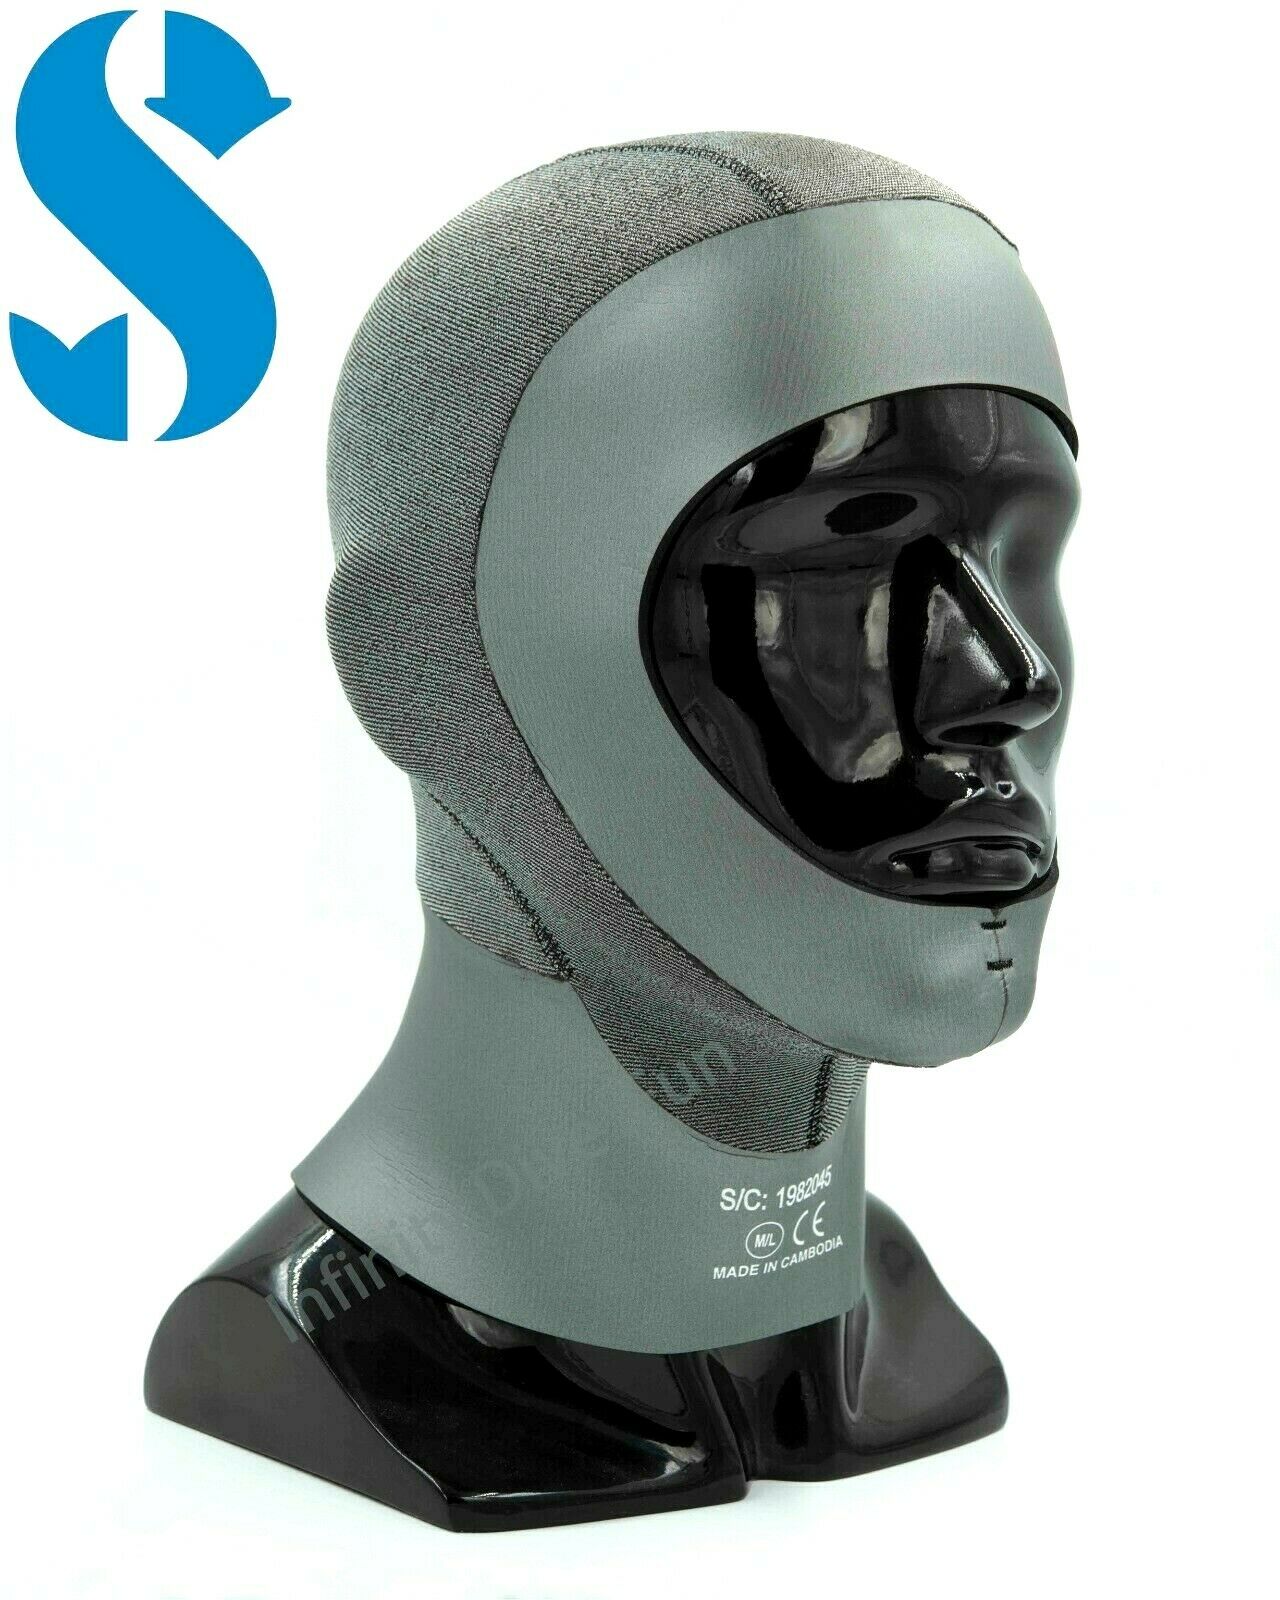 Scubapro Everflex 5/3mm 带密封半干式头罩